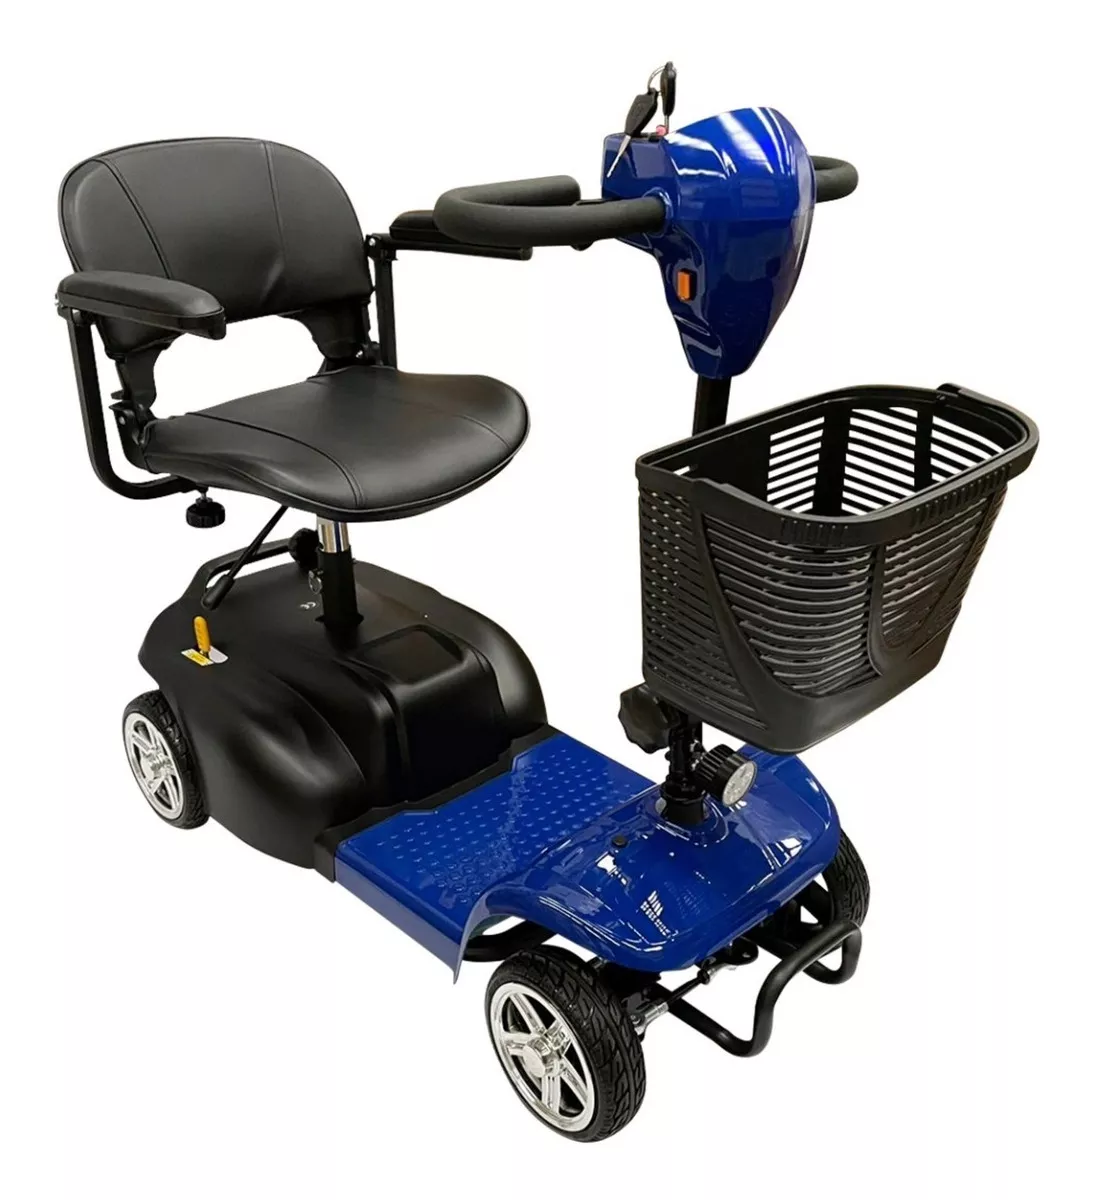 Tercera imagen para búsqueda de silla de ruedas electrica precio